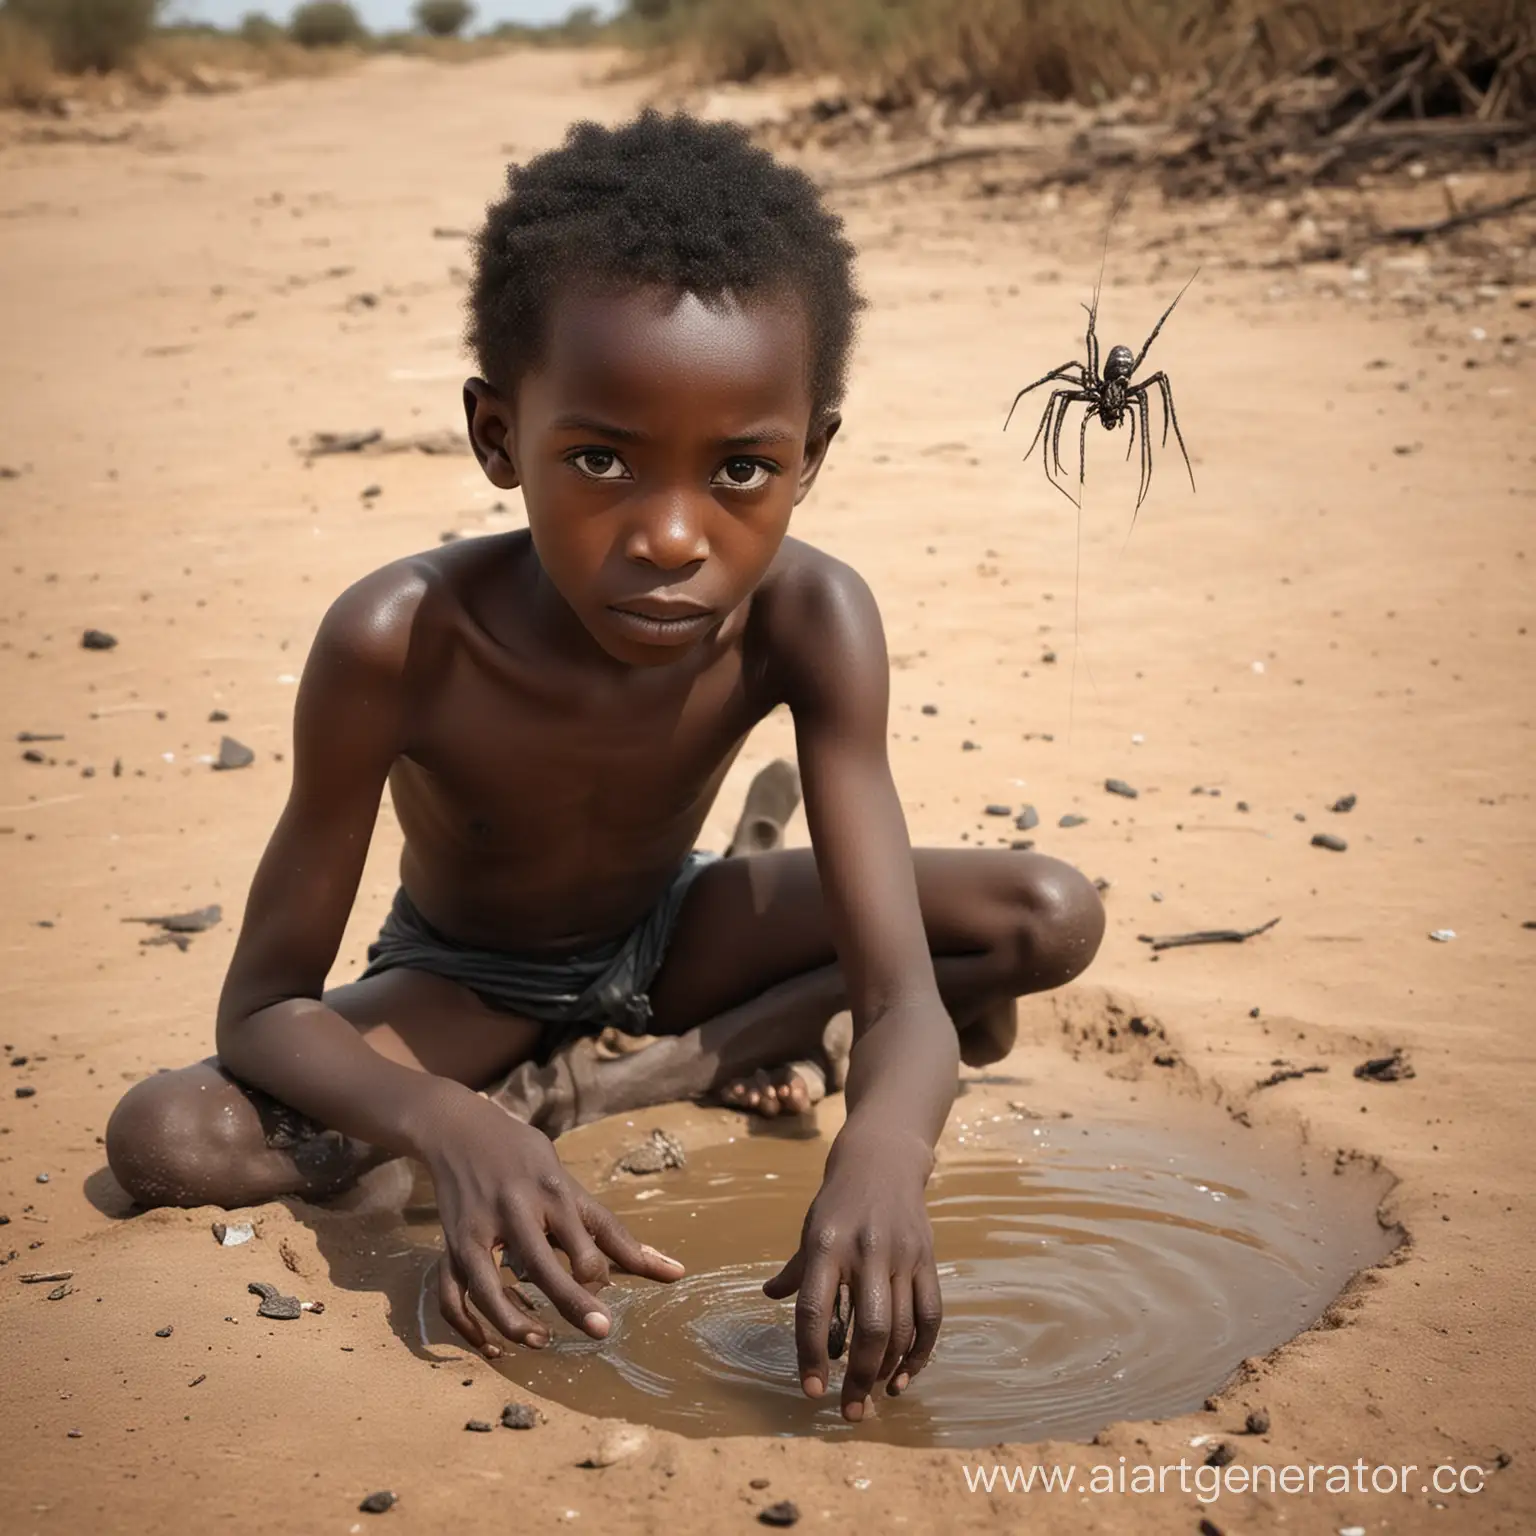 Нарисуй мне человека паука вора африканской воды на заднем фото голодающее черные дети
